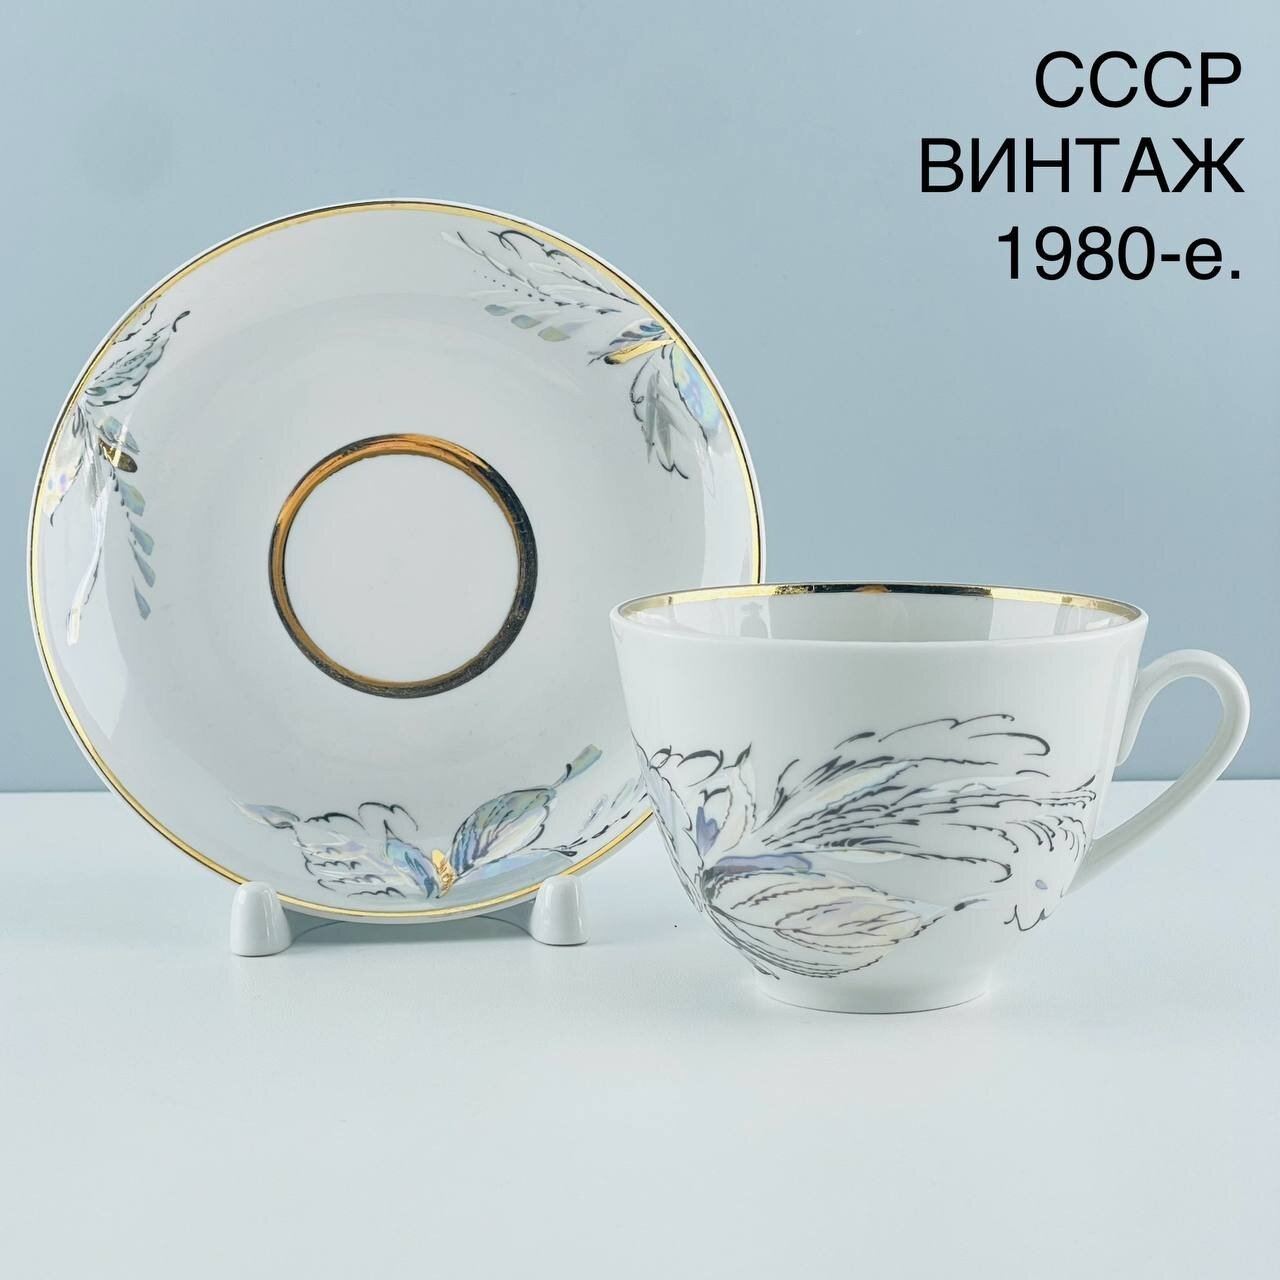 Винтажная чайная пара "Жемчужный". Фарфор ЛФЗ. СССР, 1980-е.